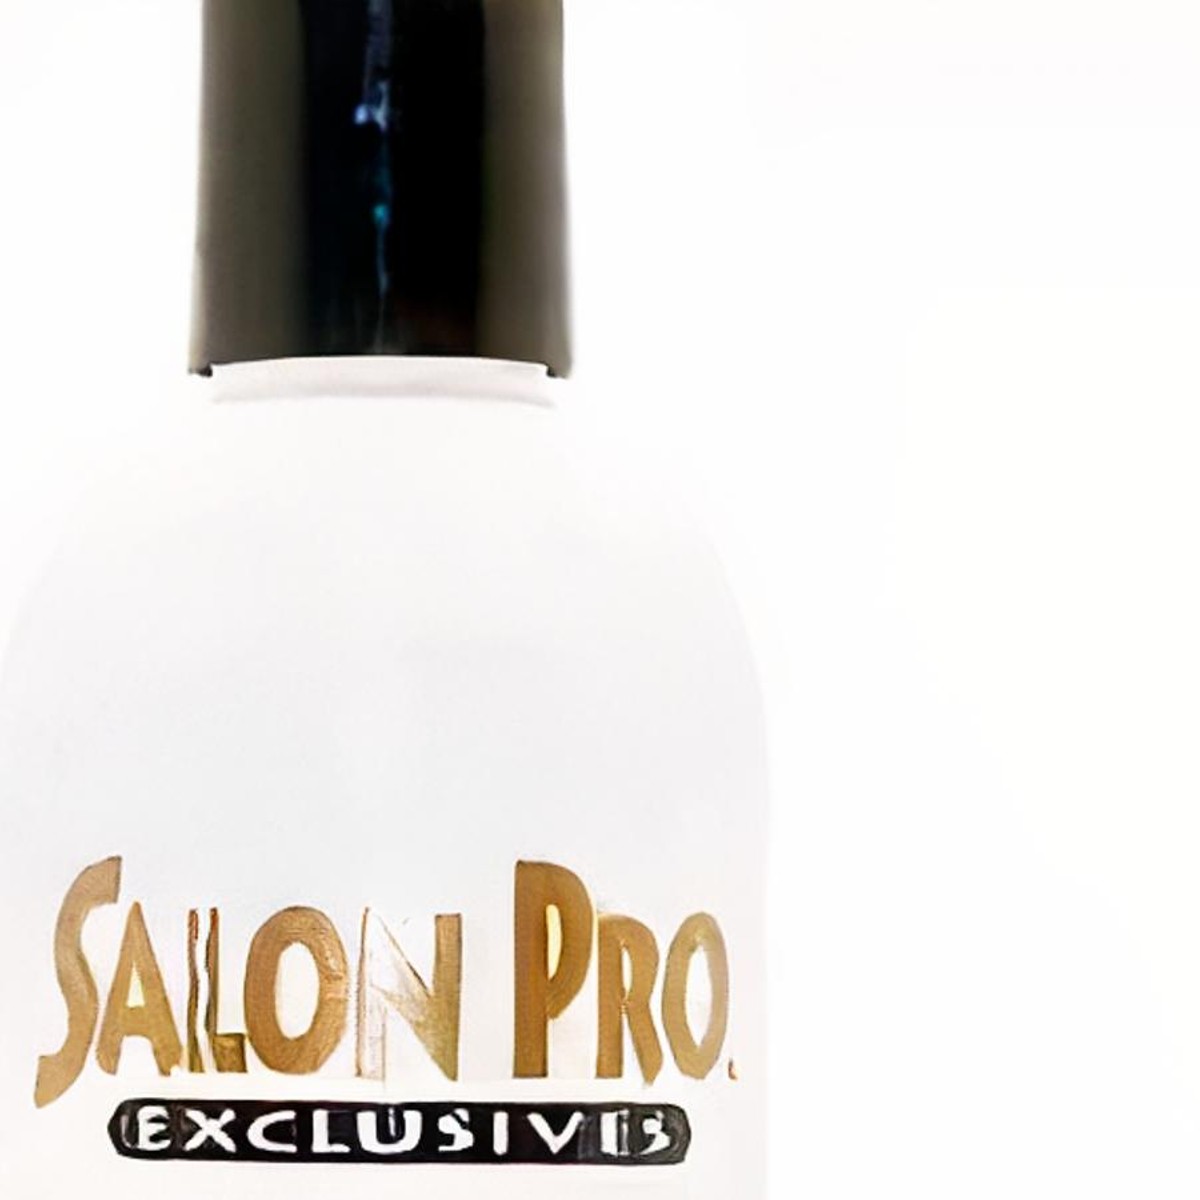 Salon Pro Glue Remover Shampoo 4 oz